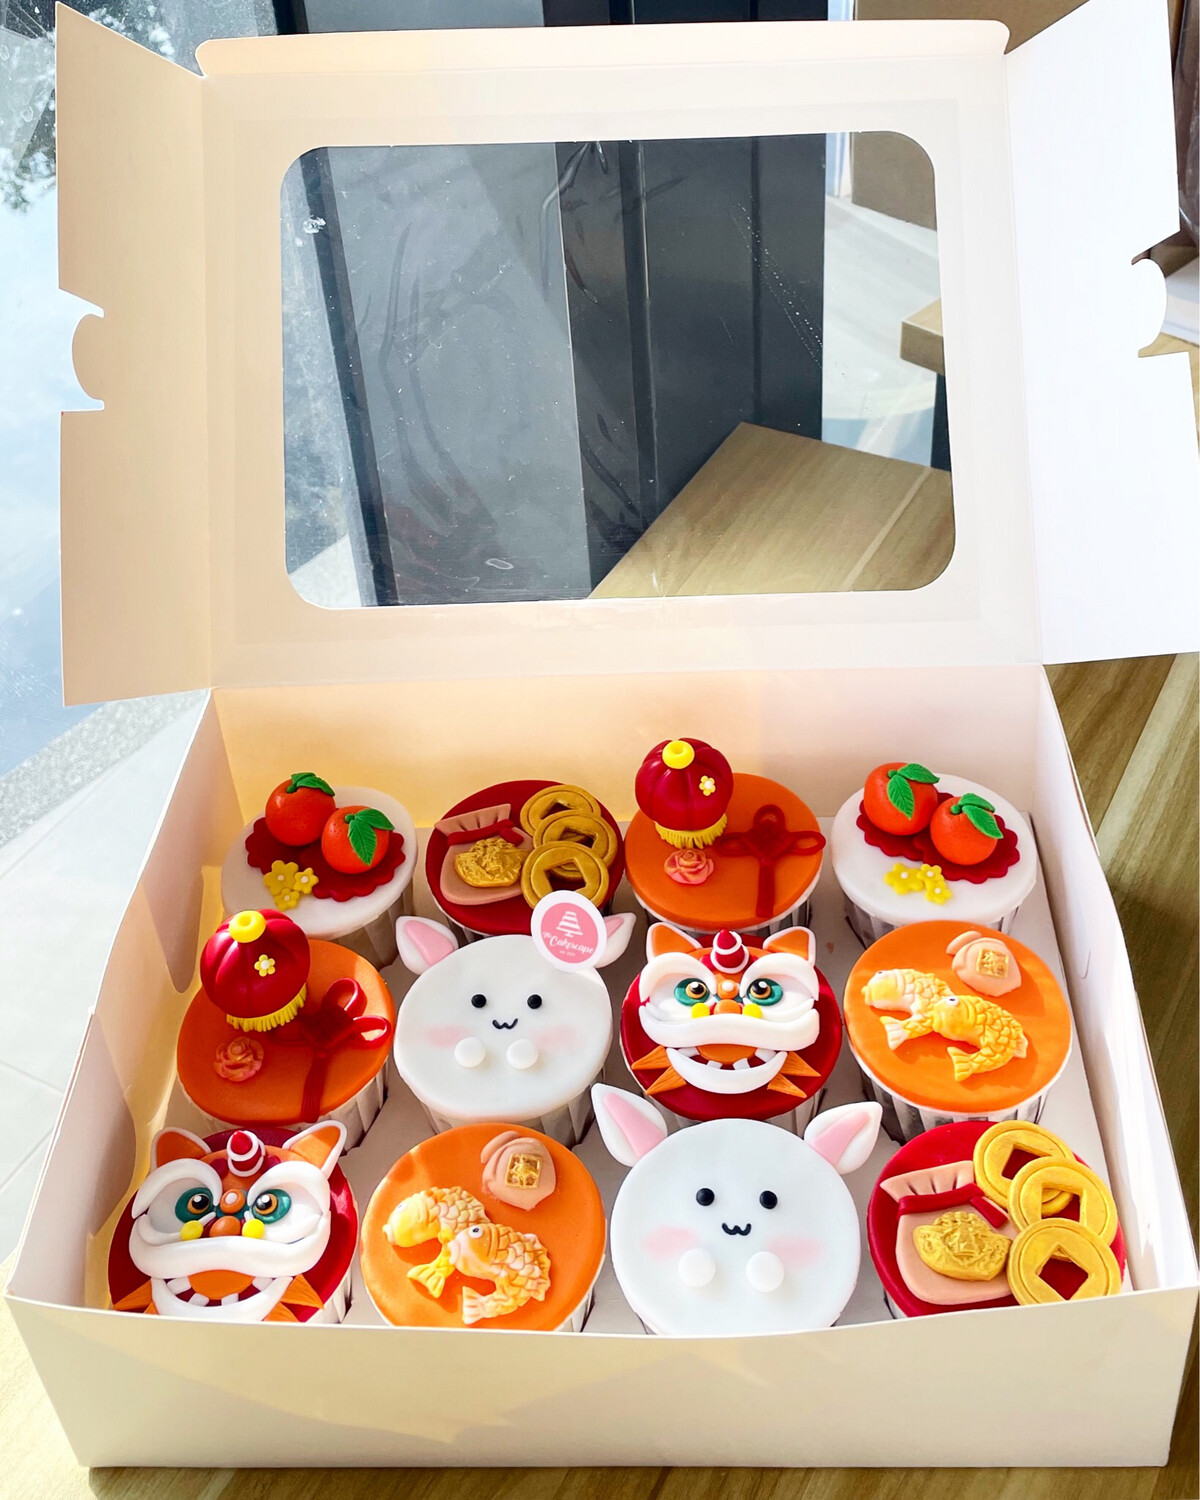 Festive - CNY Cupcakes 2